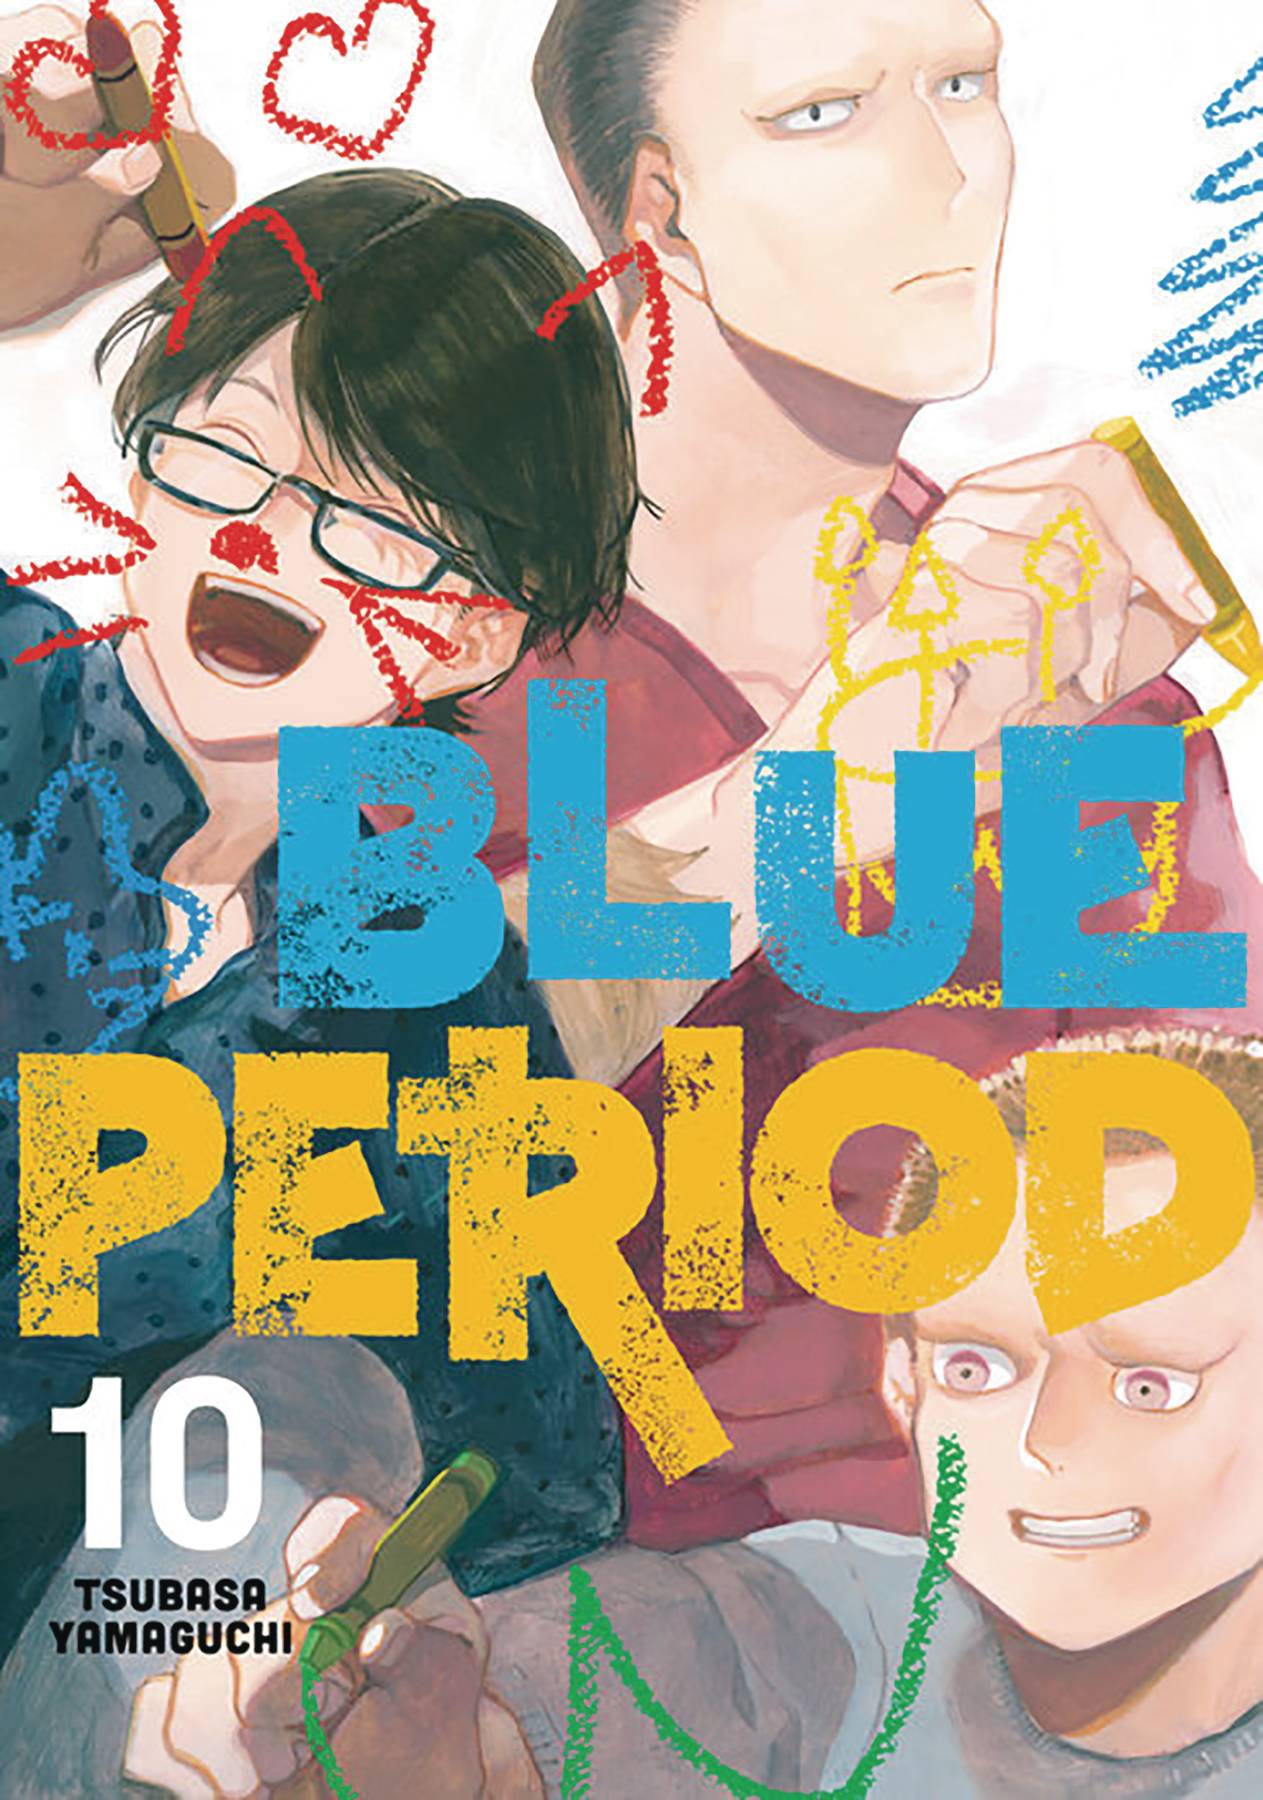 BLUE PERIOD GN VOL 10 (C: 0-1-1)